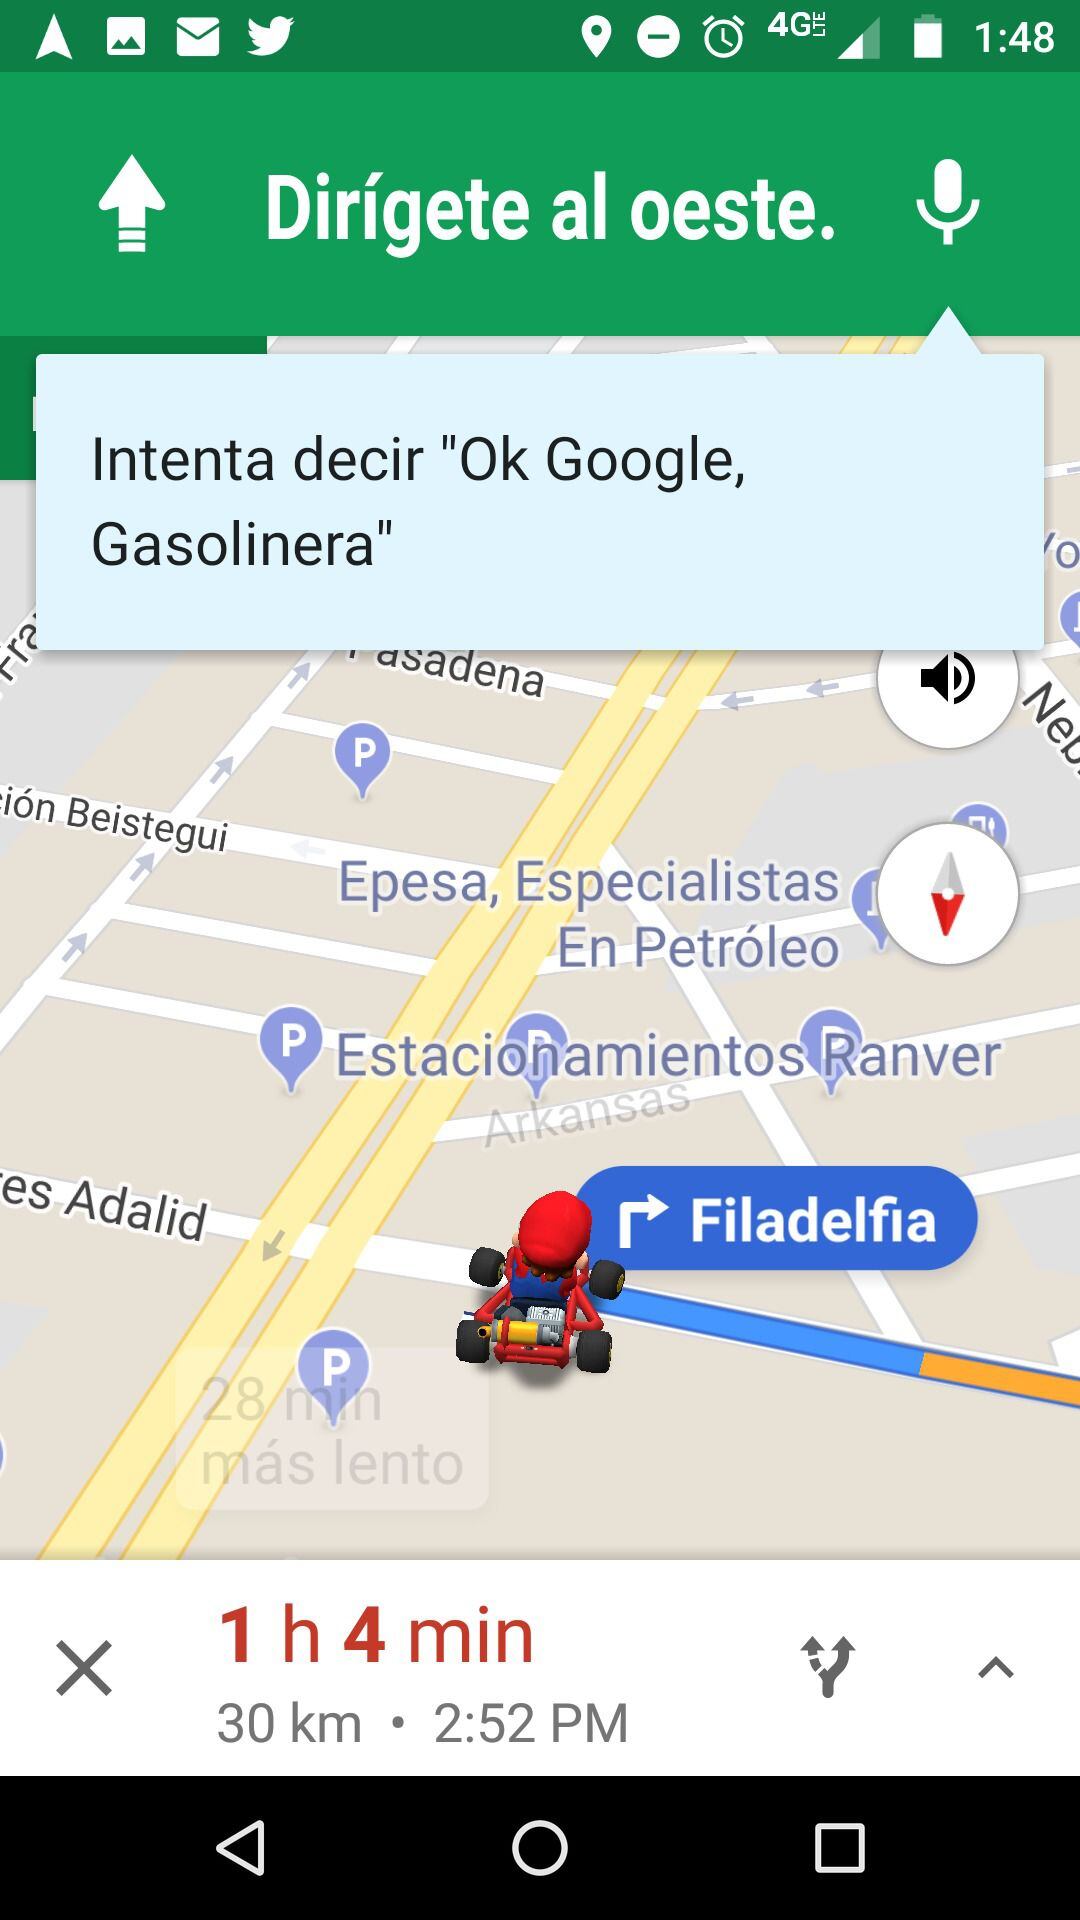 Super Mário invade o Google Maps por tempo limitado; saiba como